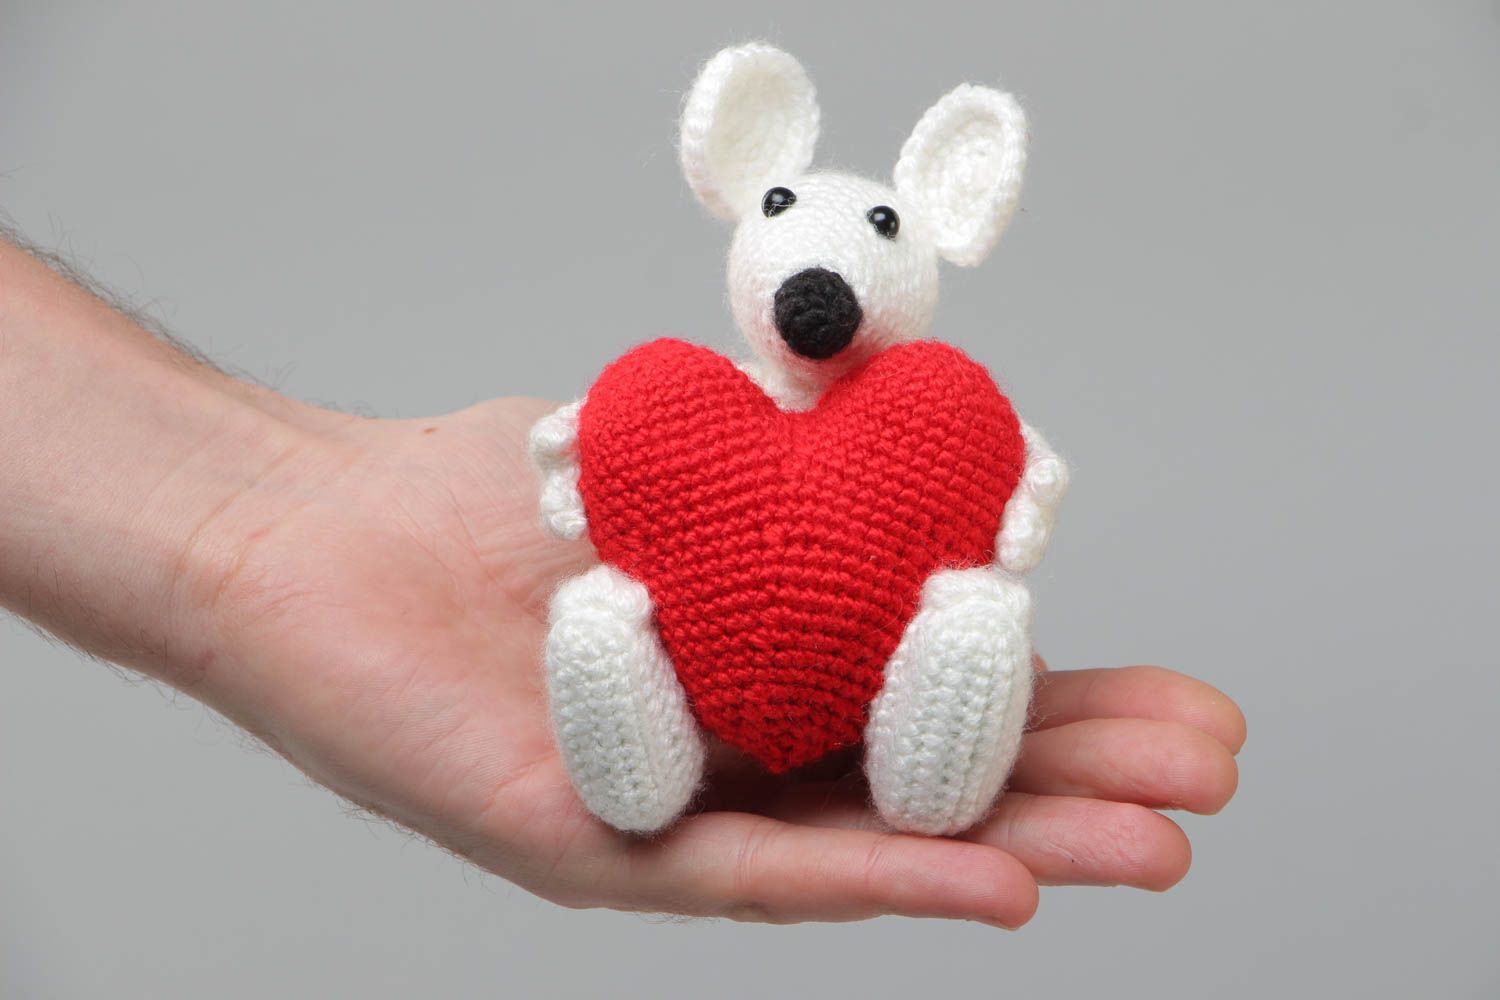 Мягкая игрушка ручной работы вязаная крючком в виде мышки с сердцем хэнд мейд фото 5